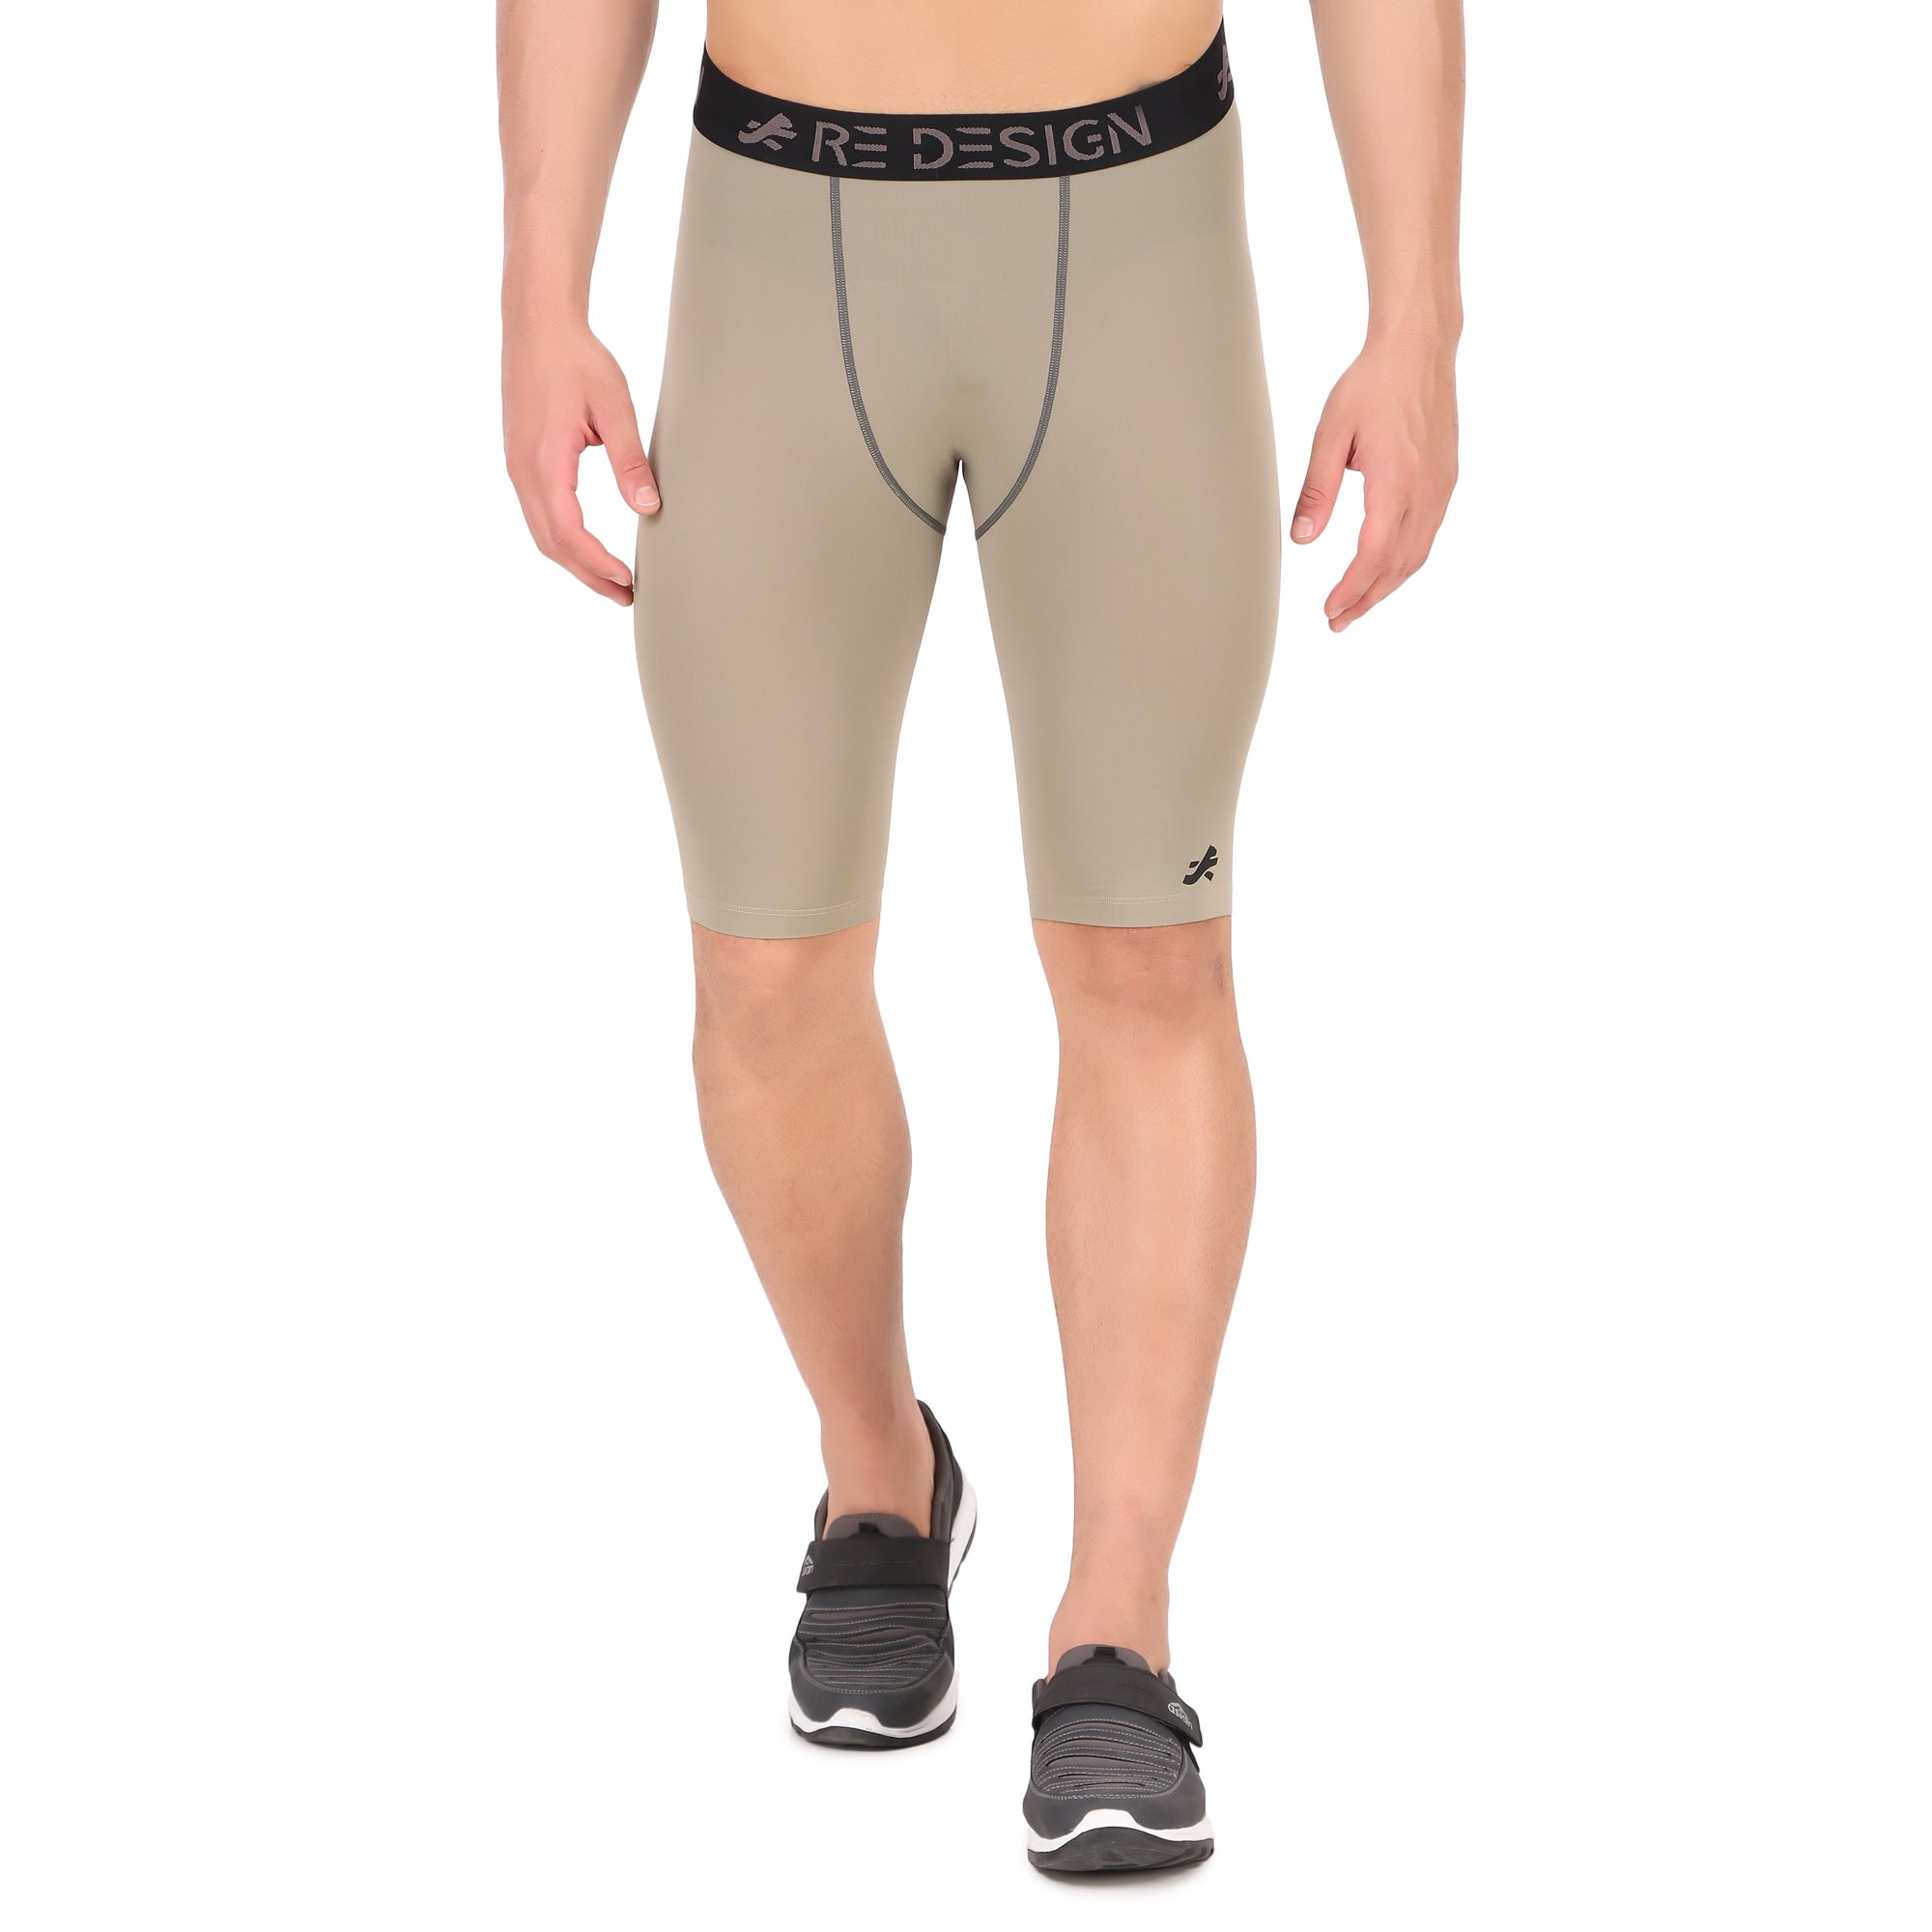 Men's Nylon Compression Shorts and Half Tights (Pista)